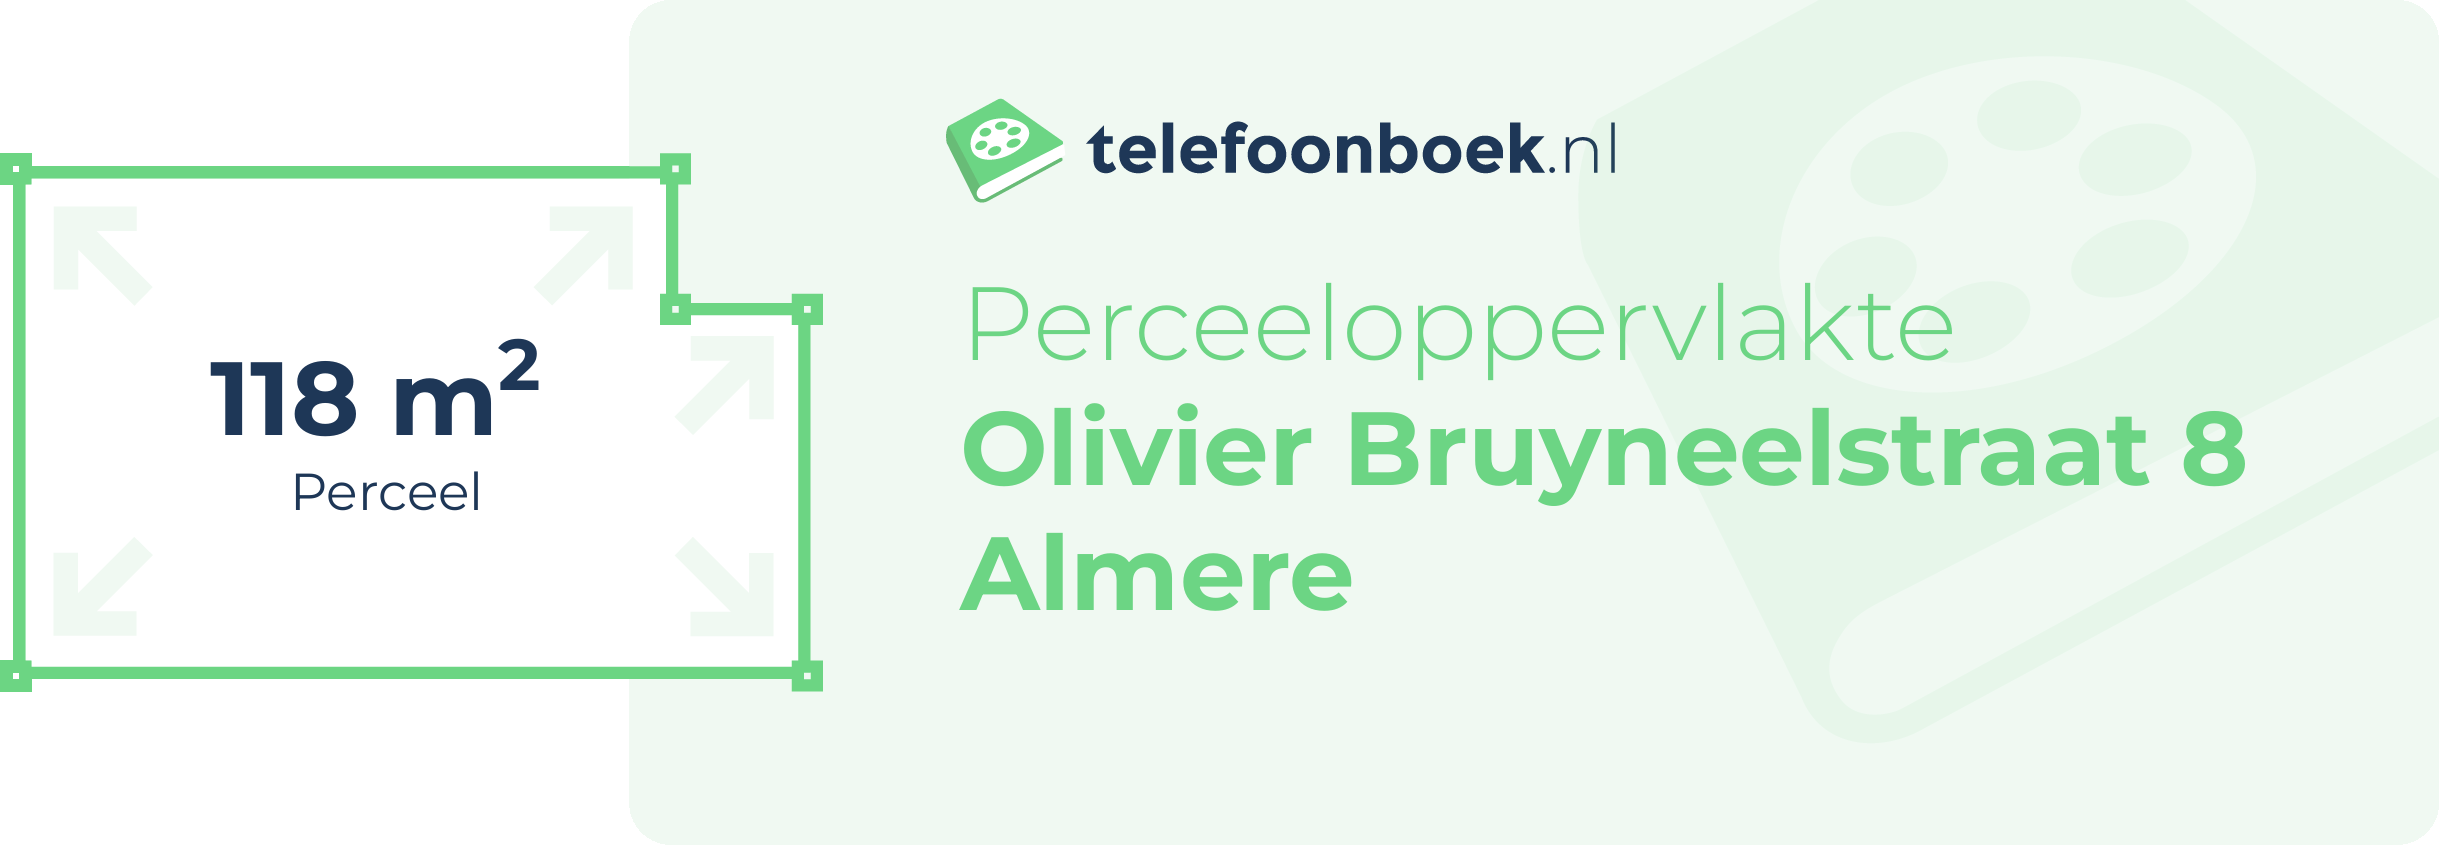 Perceeloppervlakte Olivier Bruyneelstraat 8 Almere